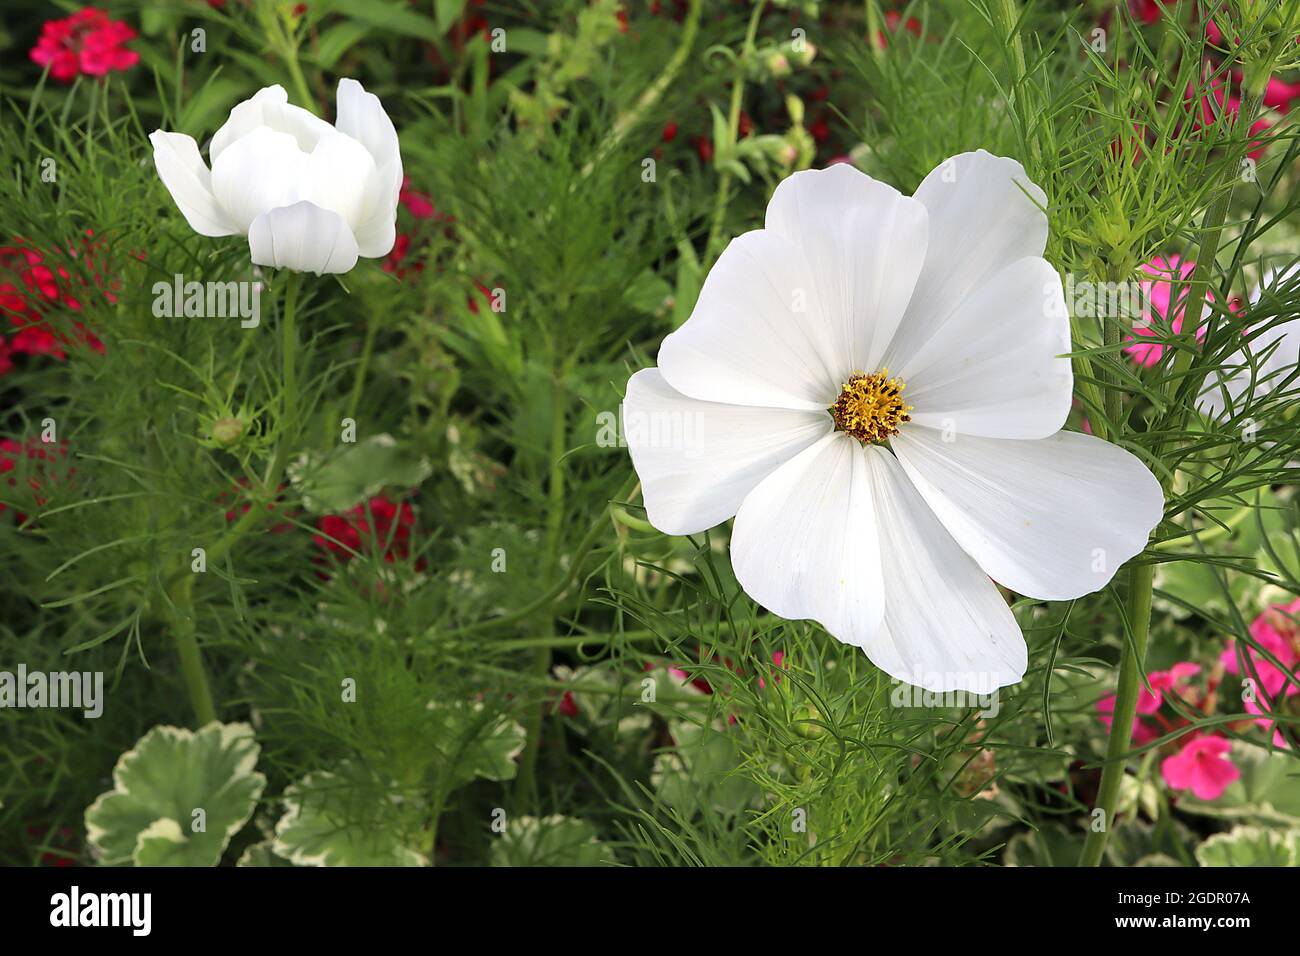 Cosmos bipinnatus ‘Purity’ weiße schalenförmige Blüten und federförmige Blätter, Juli, England, Großbritannien Stockfoto